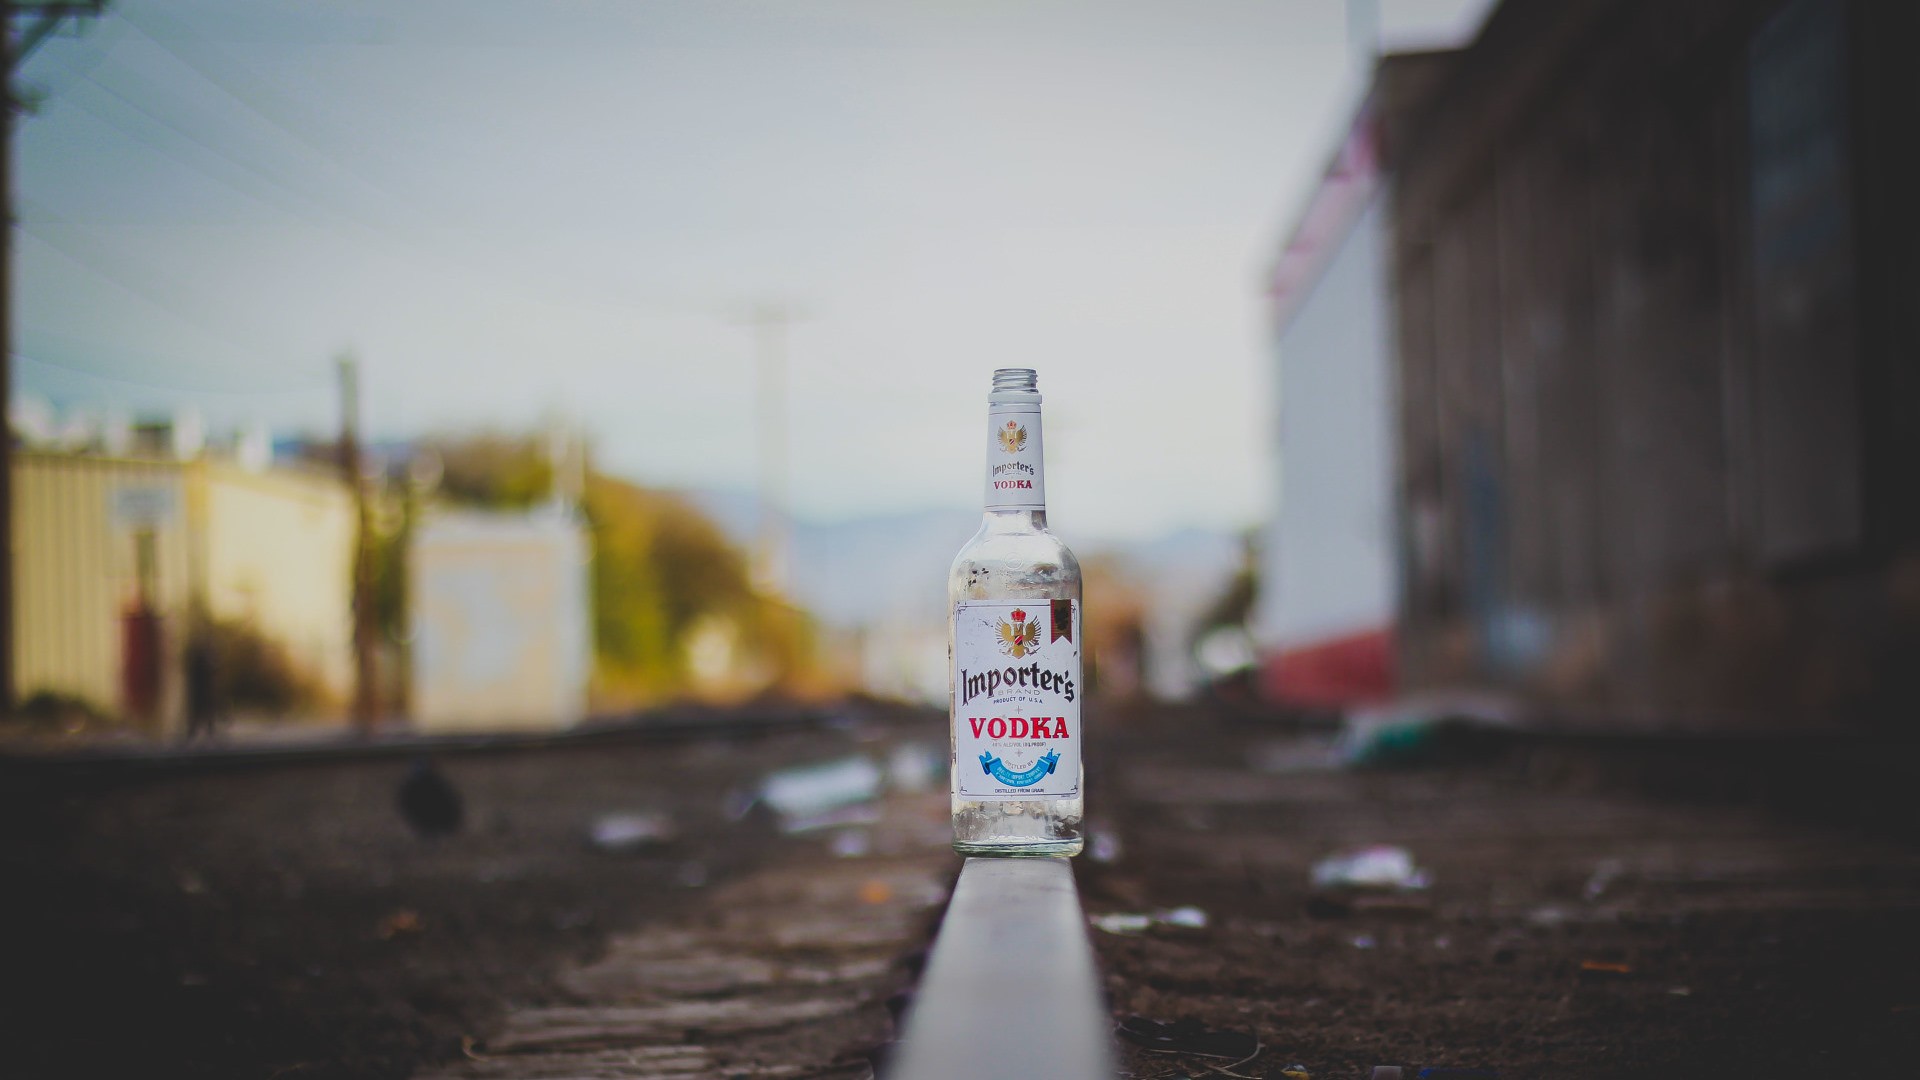 Wallpaper Vodka bottle on railroad